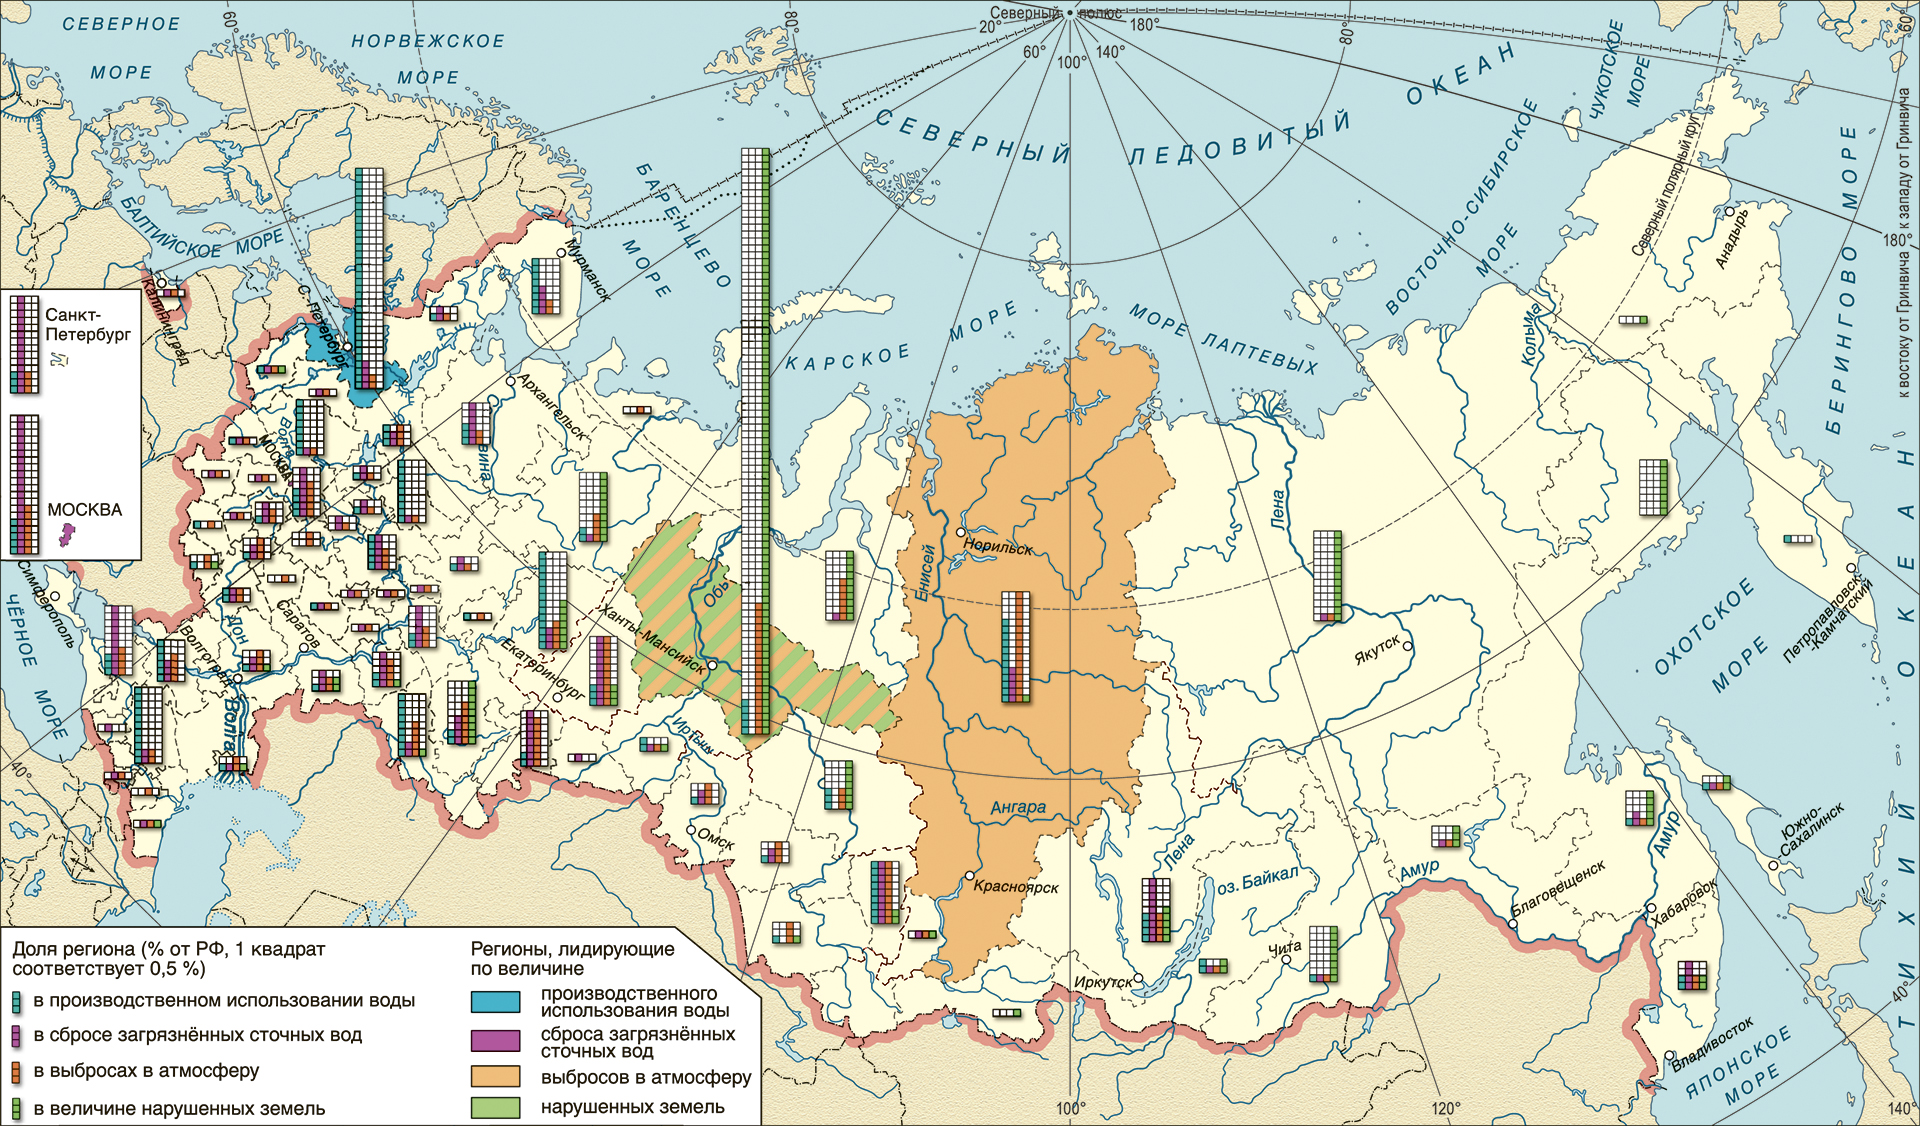  Базовые экологические параметры промышленного природопользования регионов России